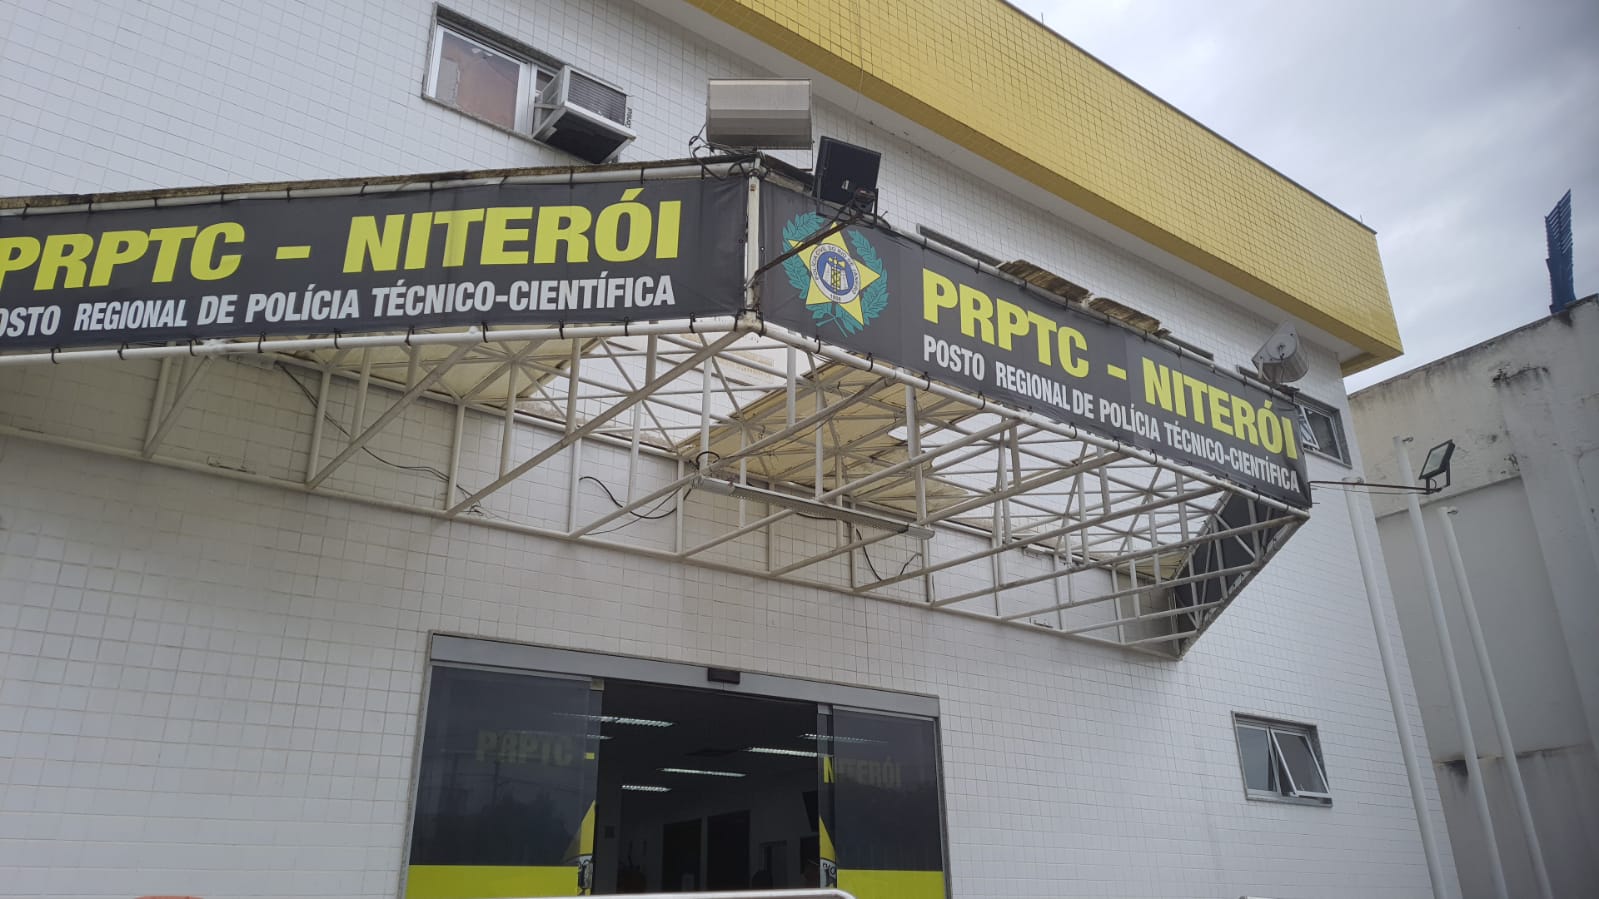 PRPTC de Niterói, na Região Metropolitana do Rio